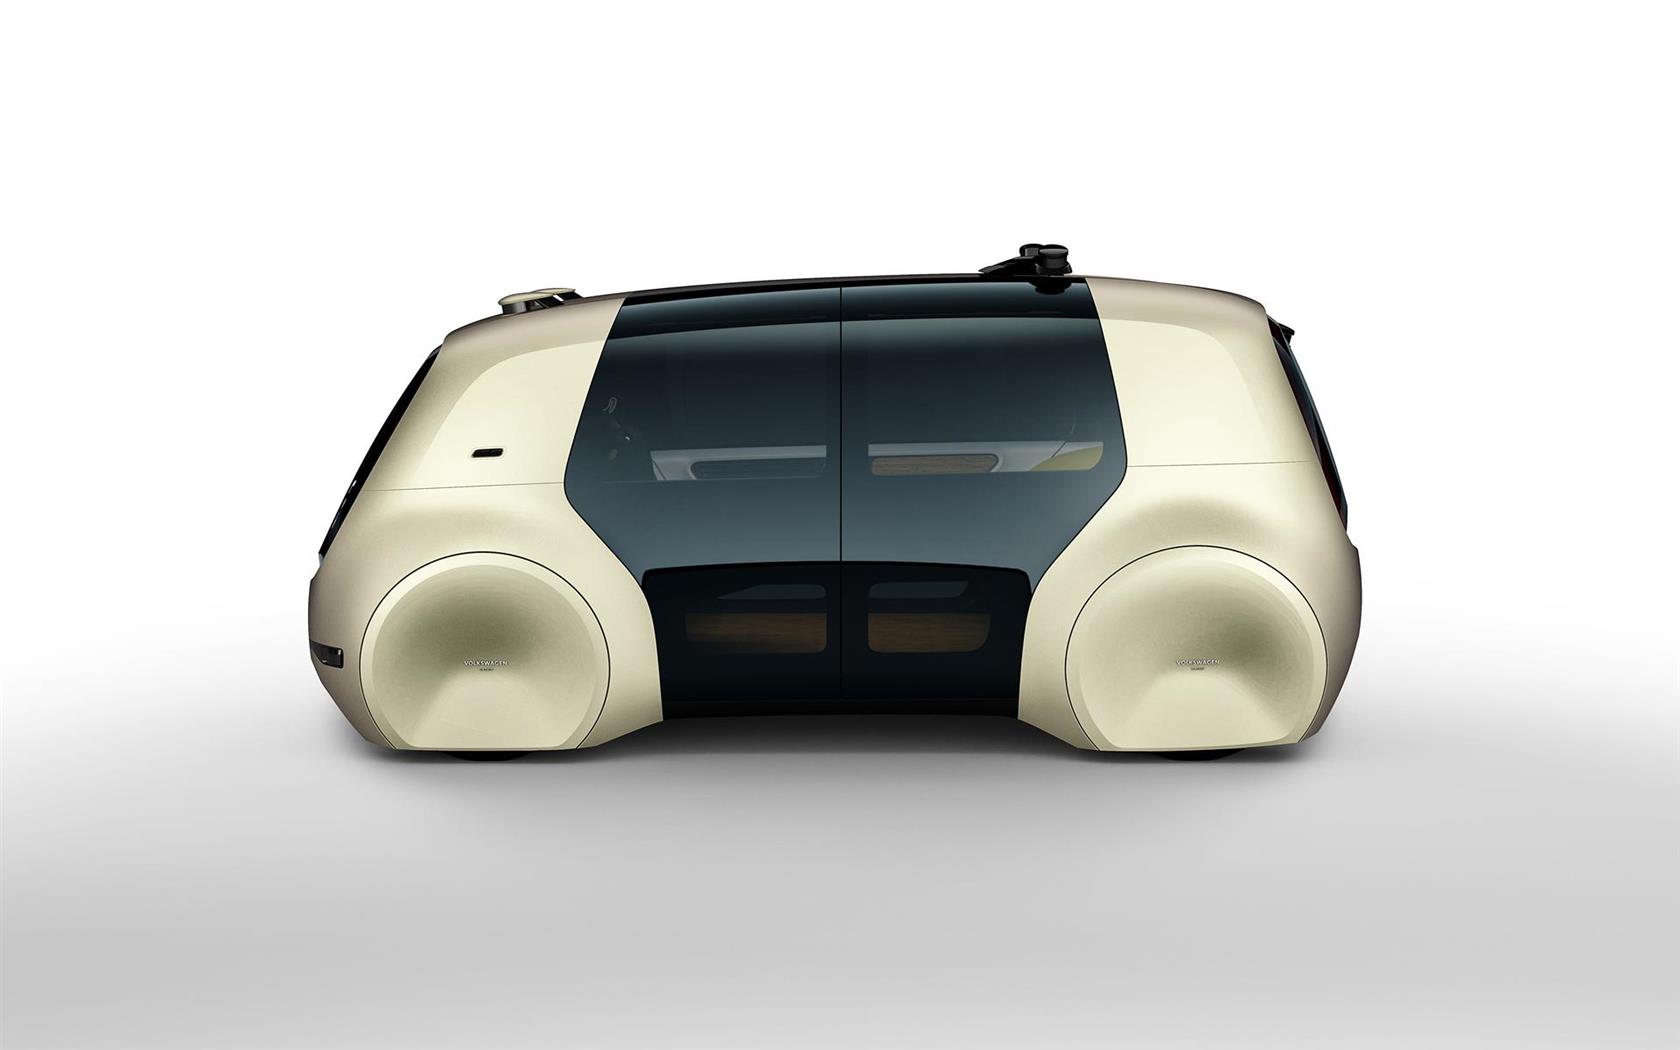 2017 Volkswagen Sedric Concept